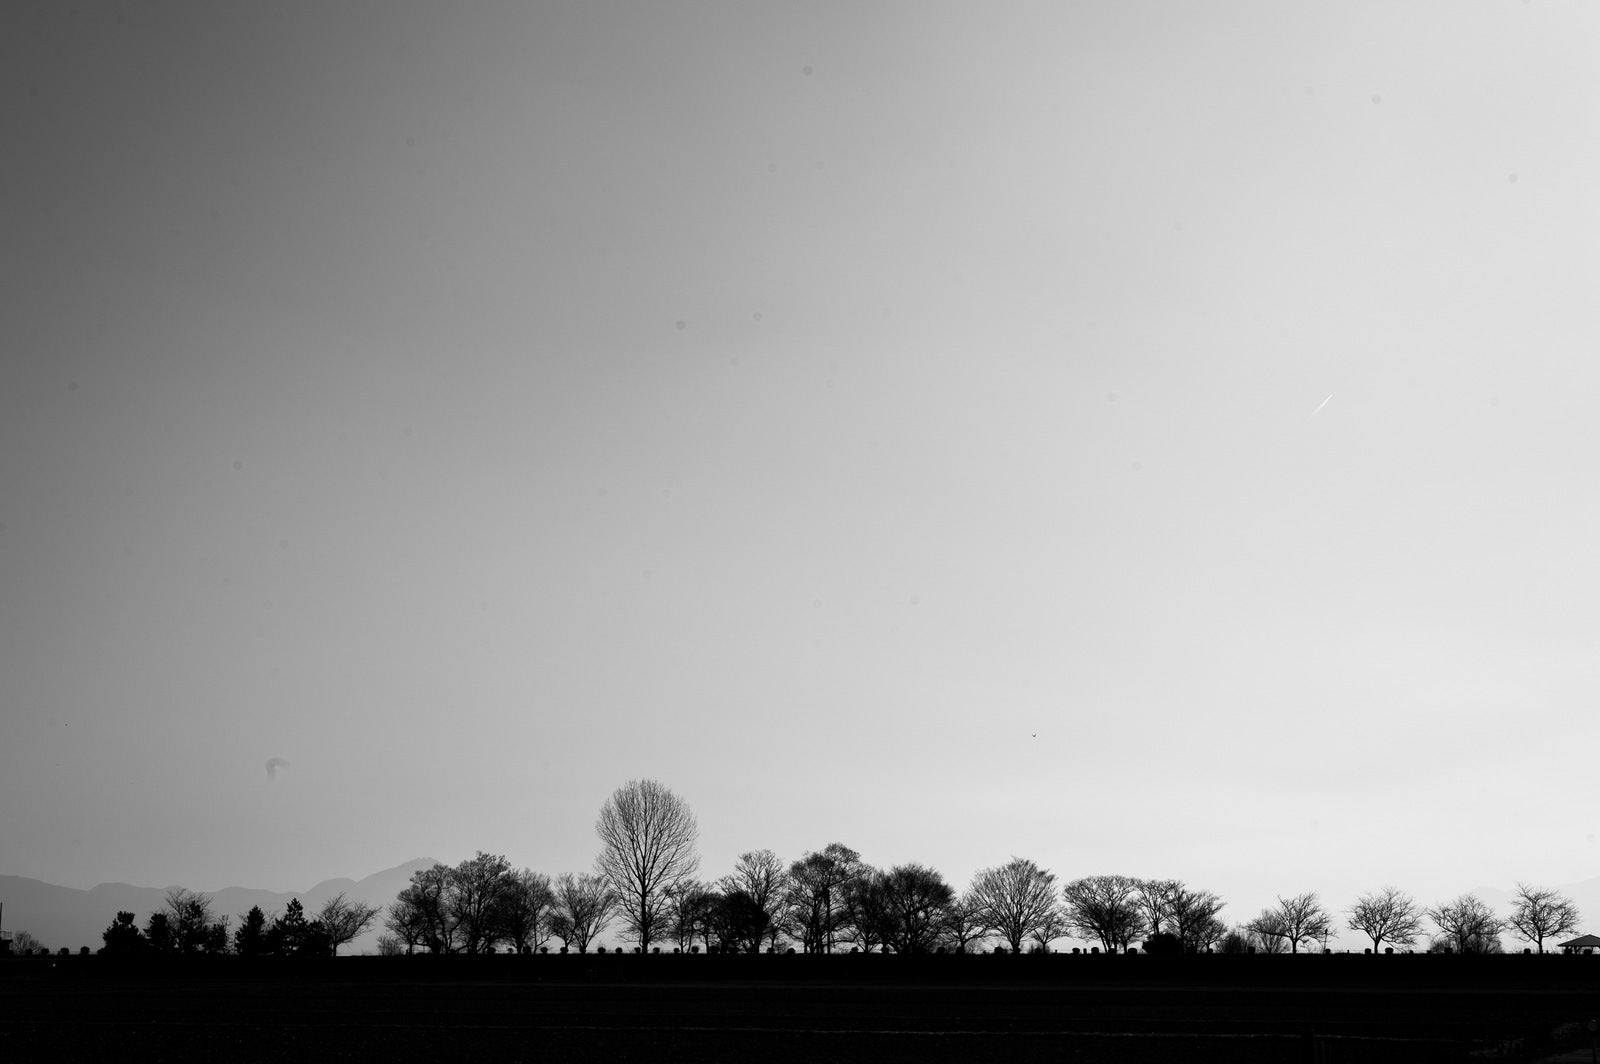 「横一列に並ぶモノクロ樹木」の写真